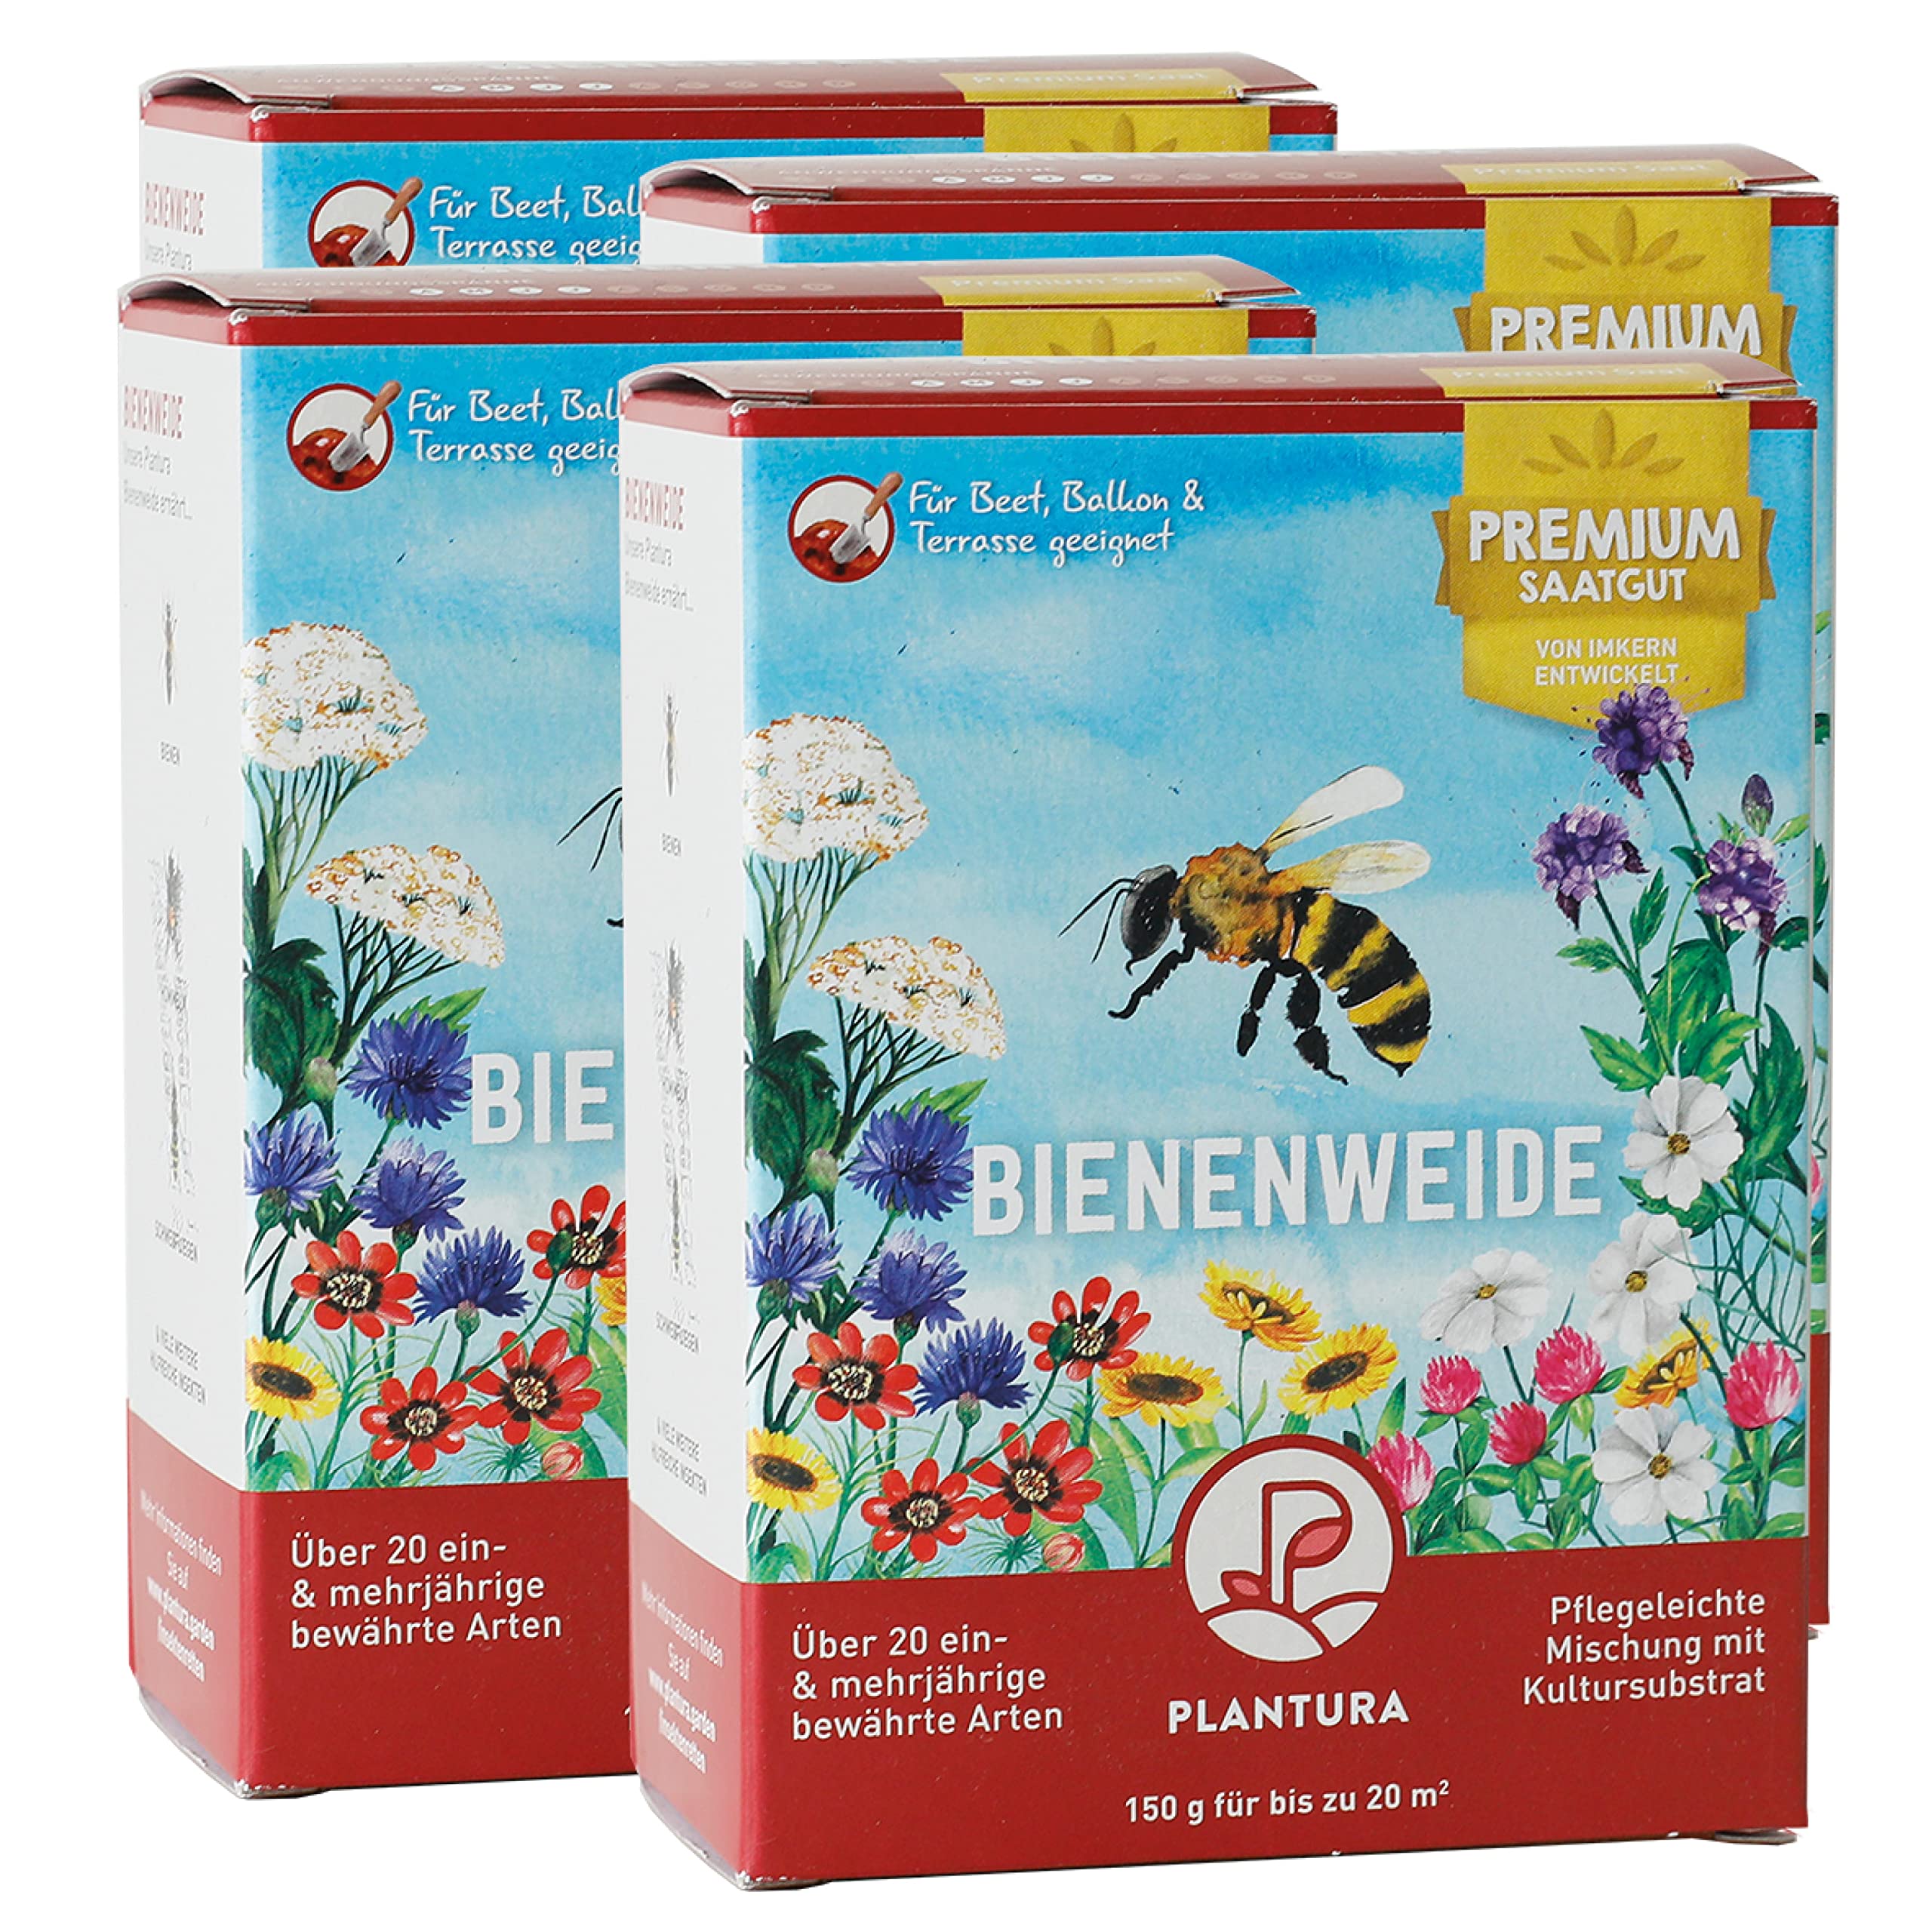 Plantura Bienenweide, EIN- & mehrjährige Saatgut-Mischung für Insekten, 600 g für 80 m²